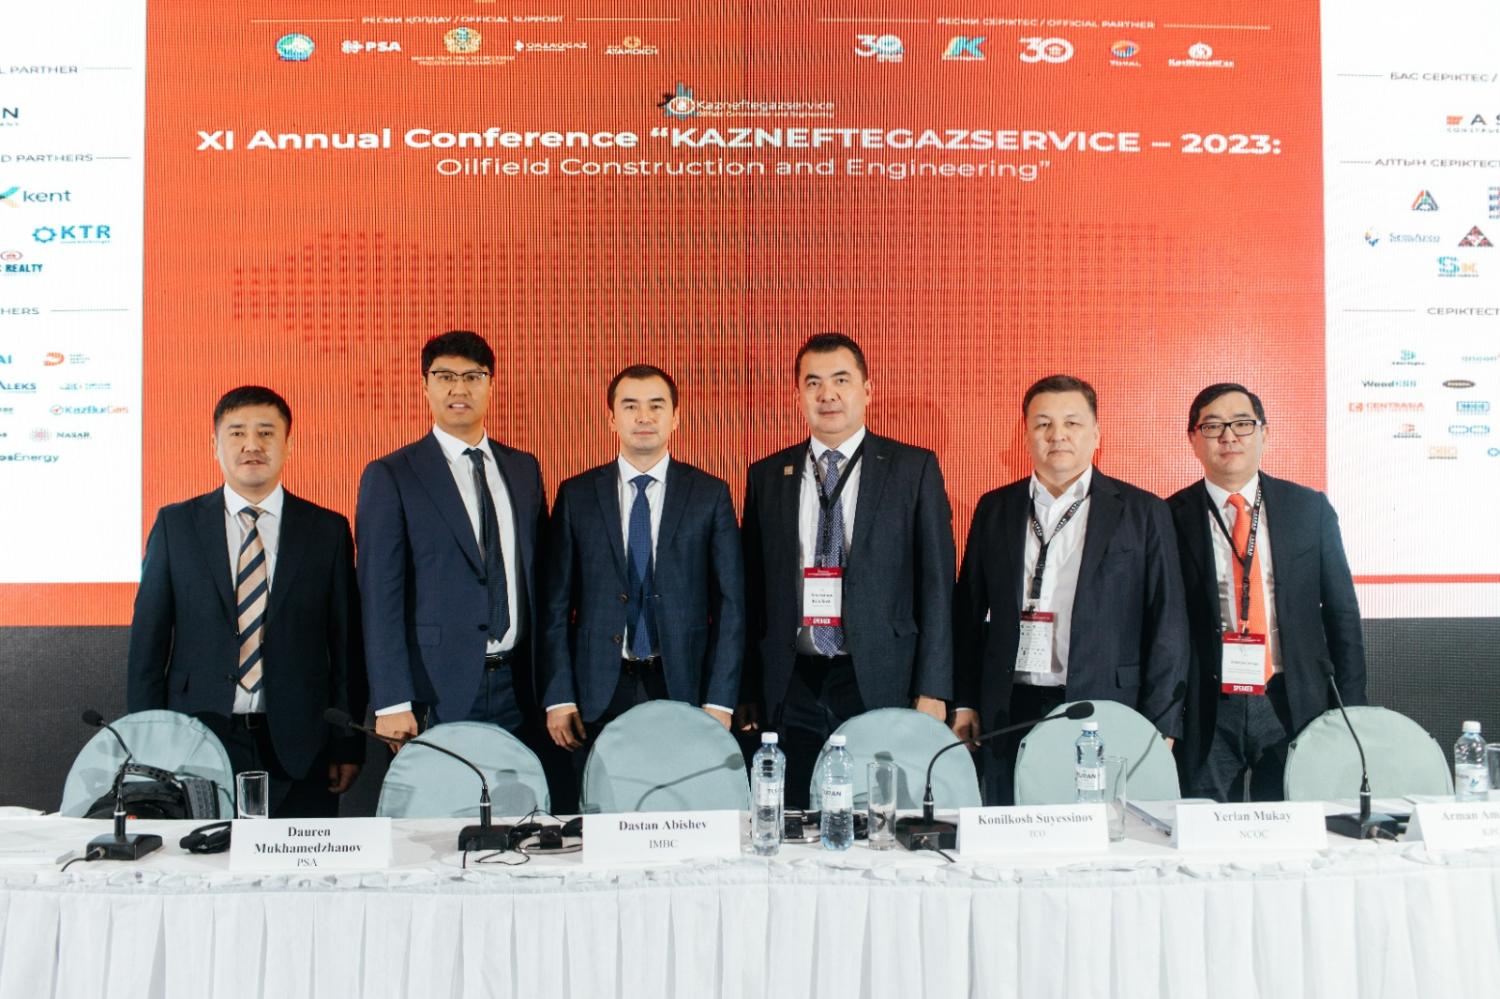 IMB Центр принял участие в XI ежегодной конференции "КАЗНЕФТЕГАЗСЕРВИС – 2023"